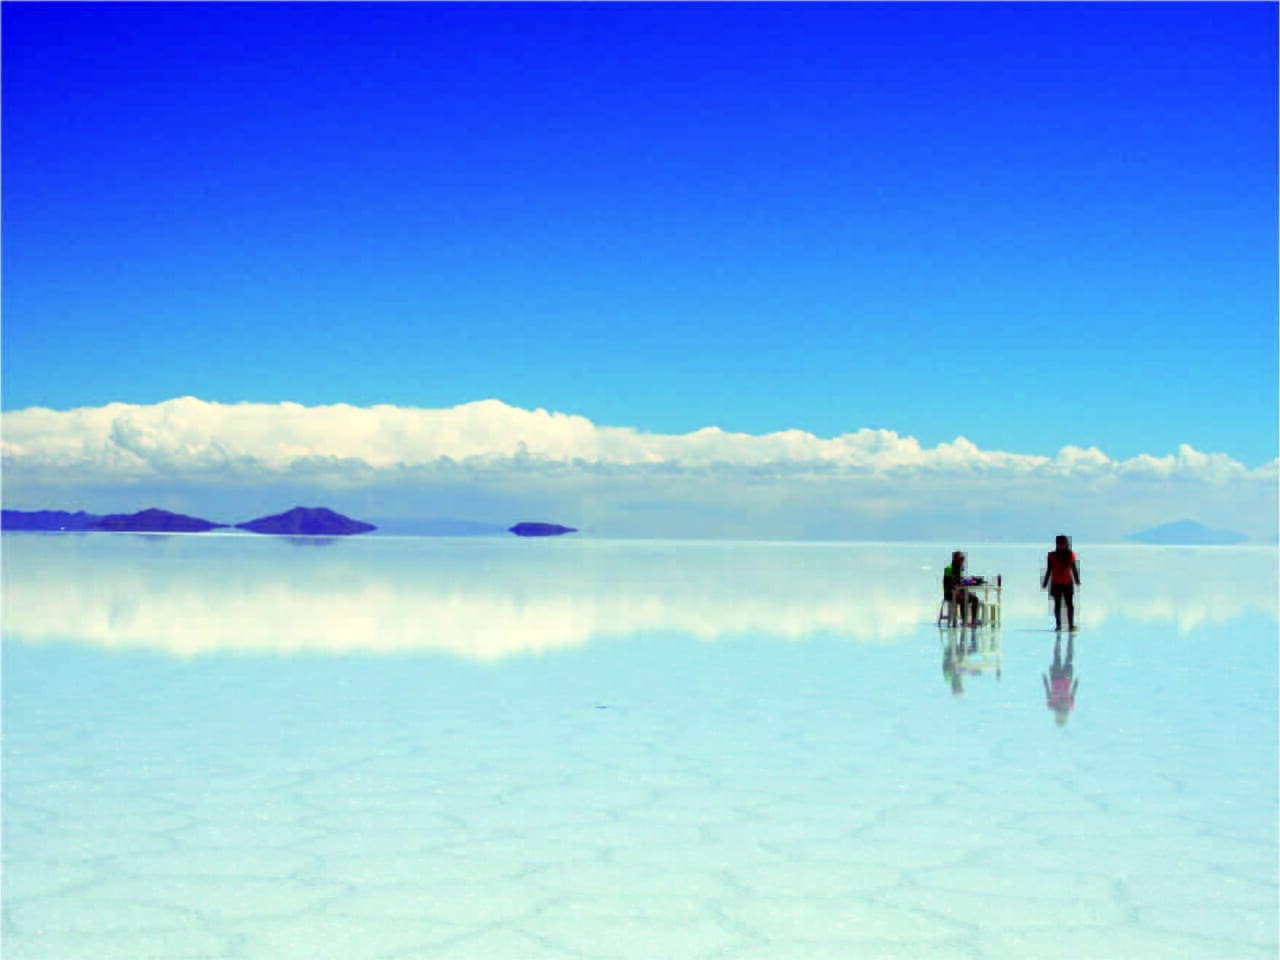 ボリビア ウユニ塩湖 の塩作り 調べ学習 夏休み 自由研究プロジェクト 学研キッズネット